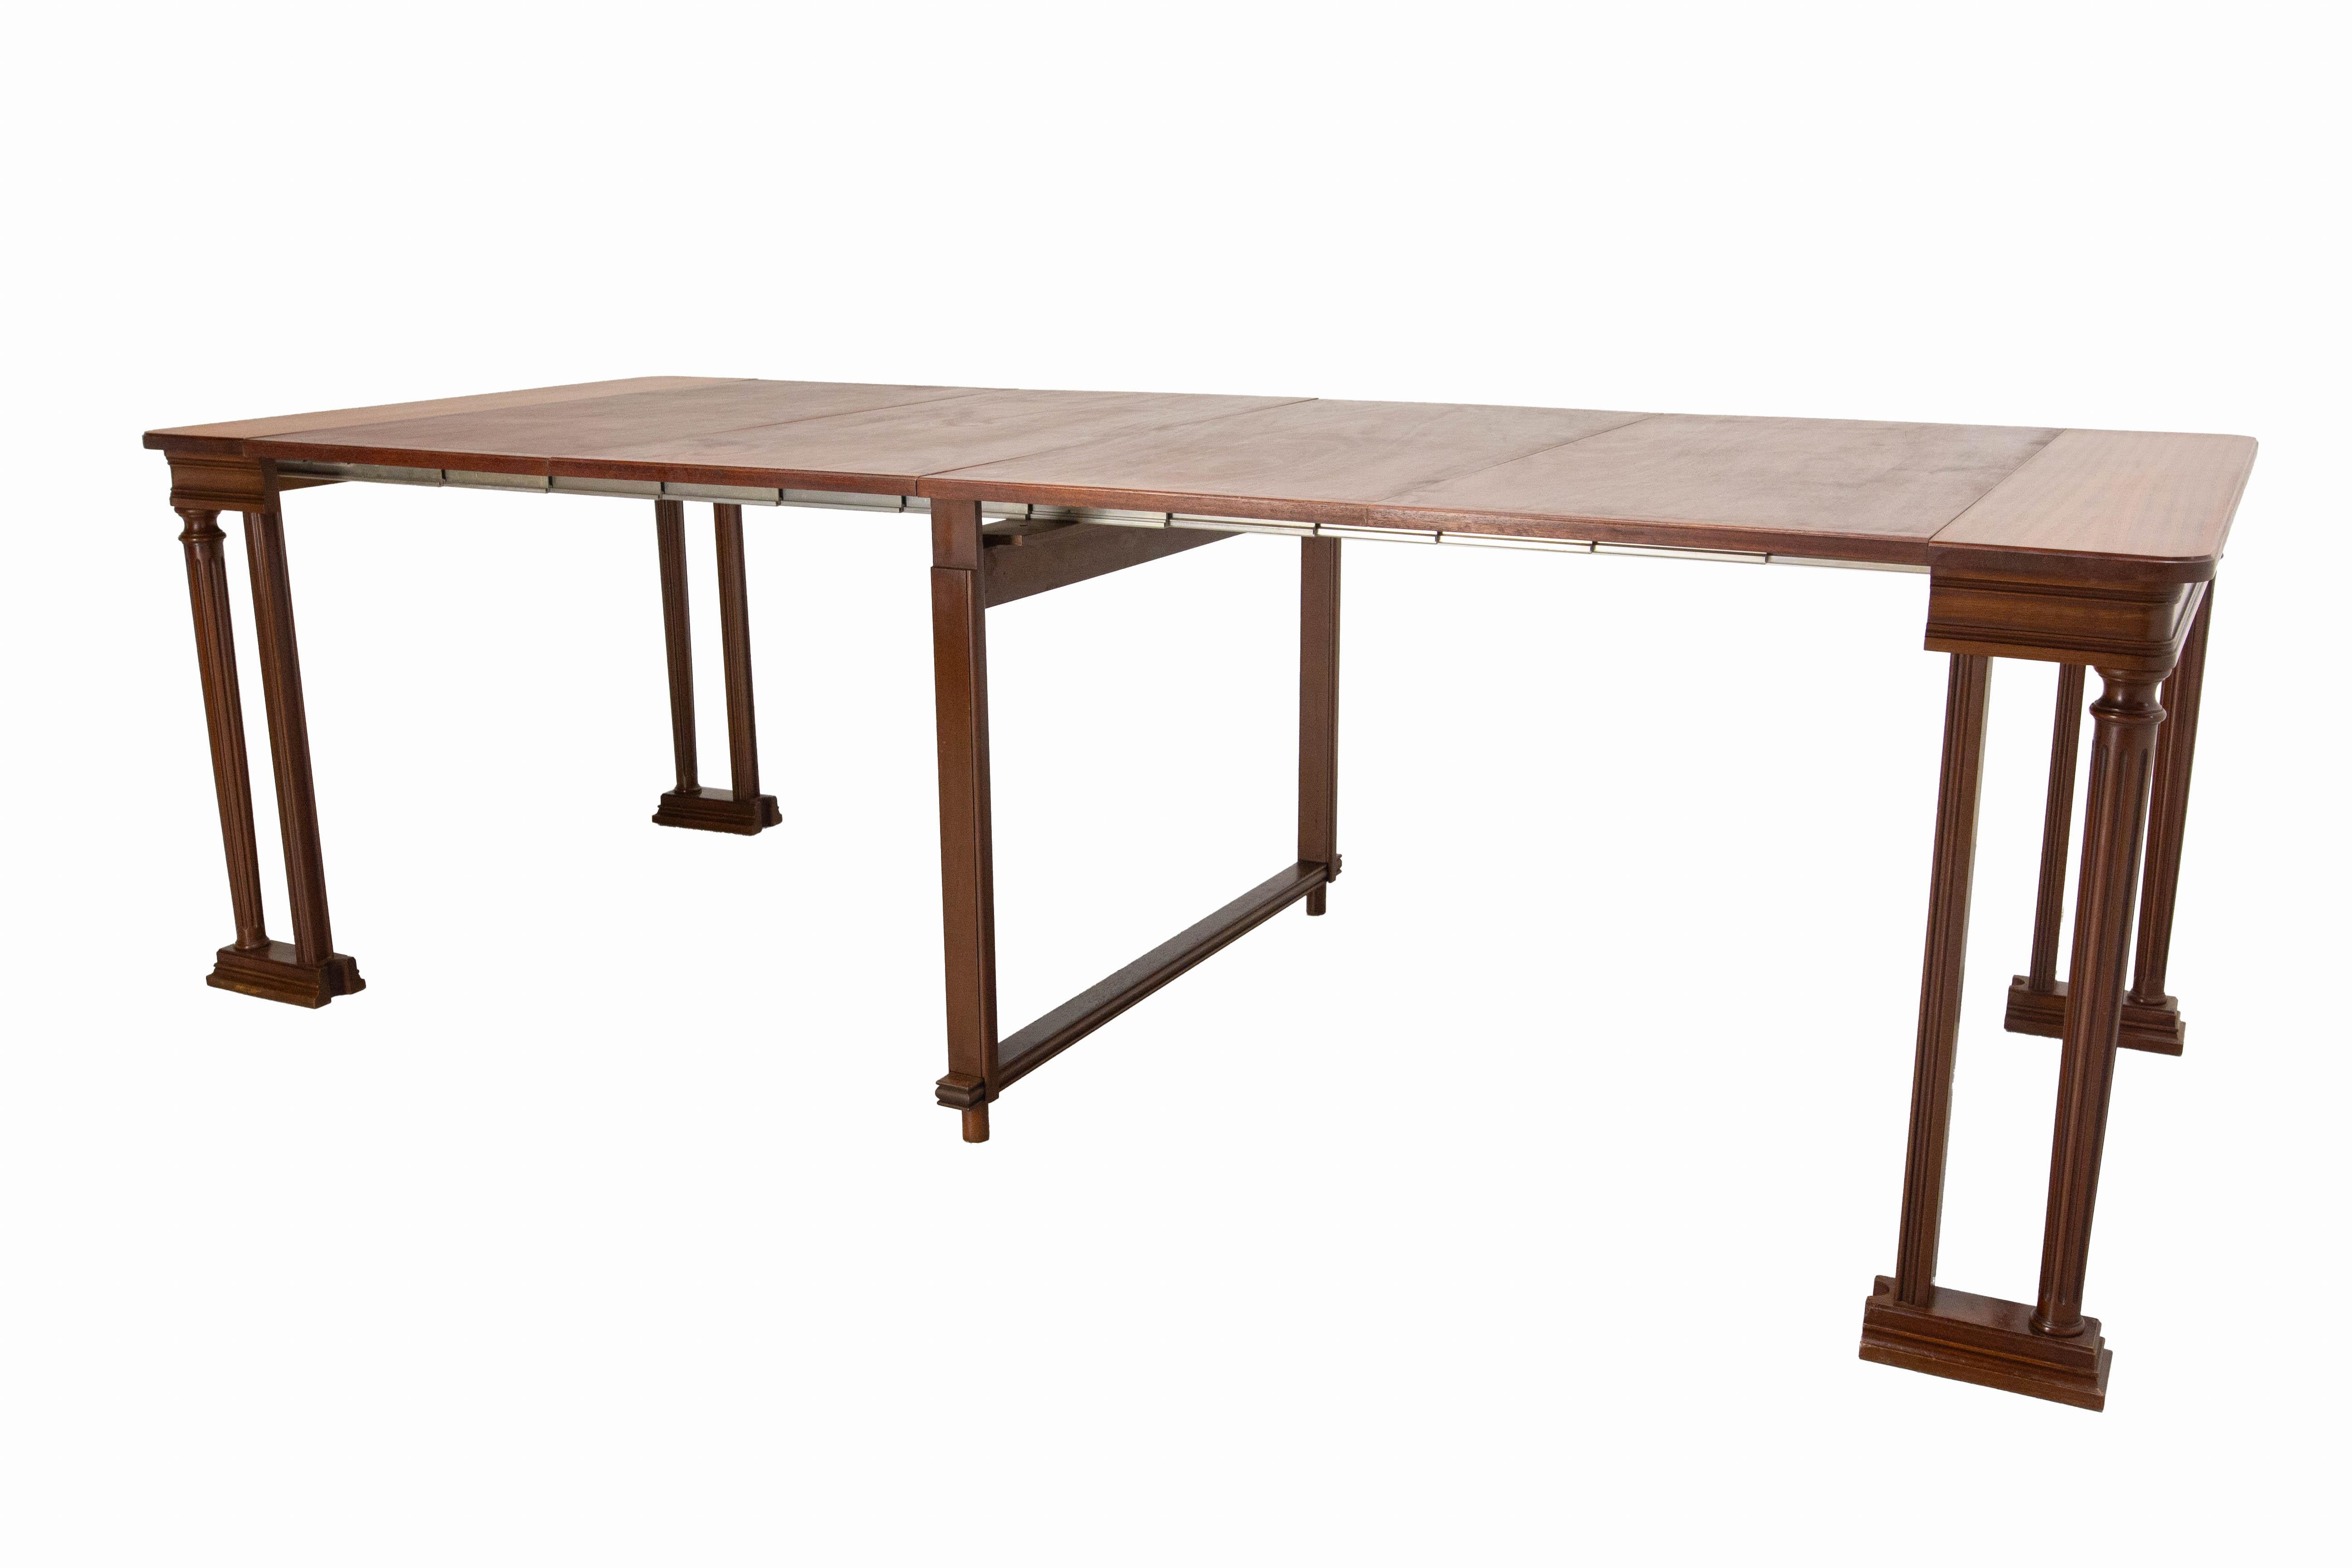 Esstisch oder Konferenztisch, französisch, um 1970
Exotisches Holz und Stahl
Zusammengeklappt misst der Tisch nur wenige Zentimeter, was für Mehrzweckräume sehr nützlich ist, und er kann als Konsole verwendet werden
Abmessung D 39,37 Zoll. W 16.54